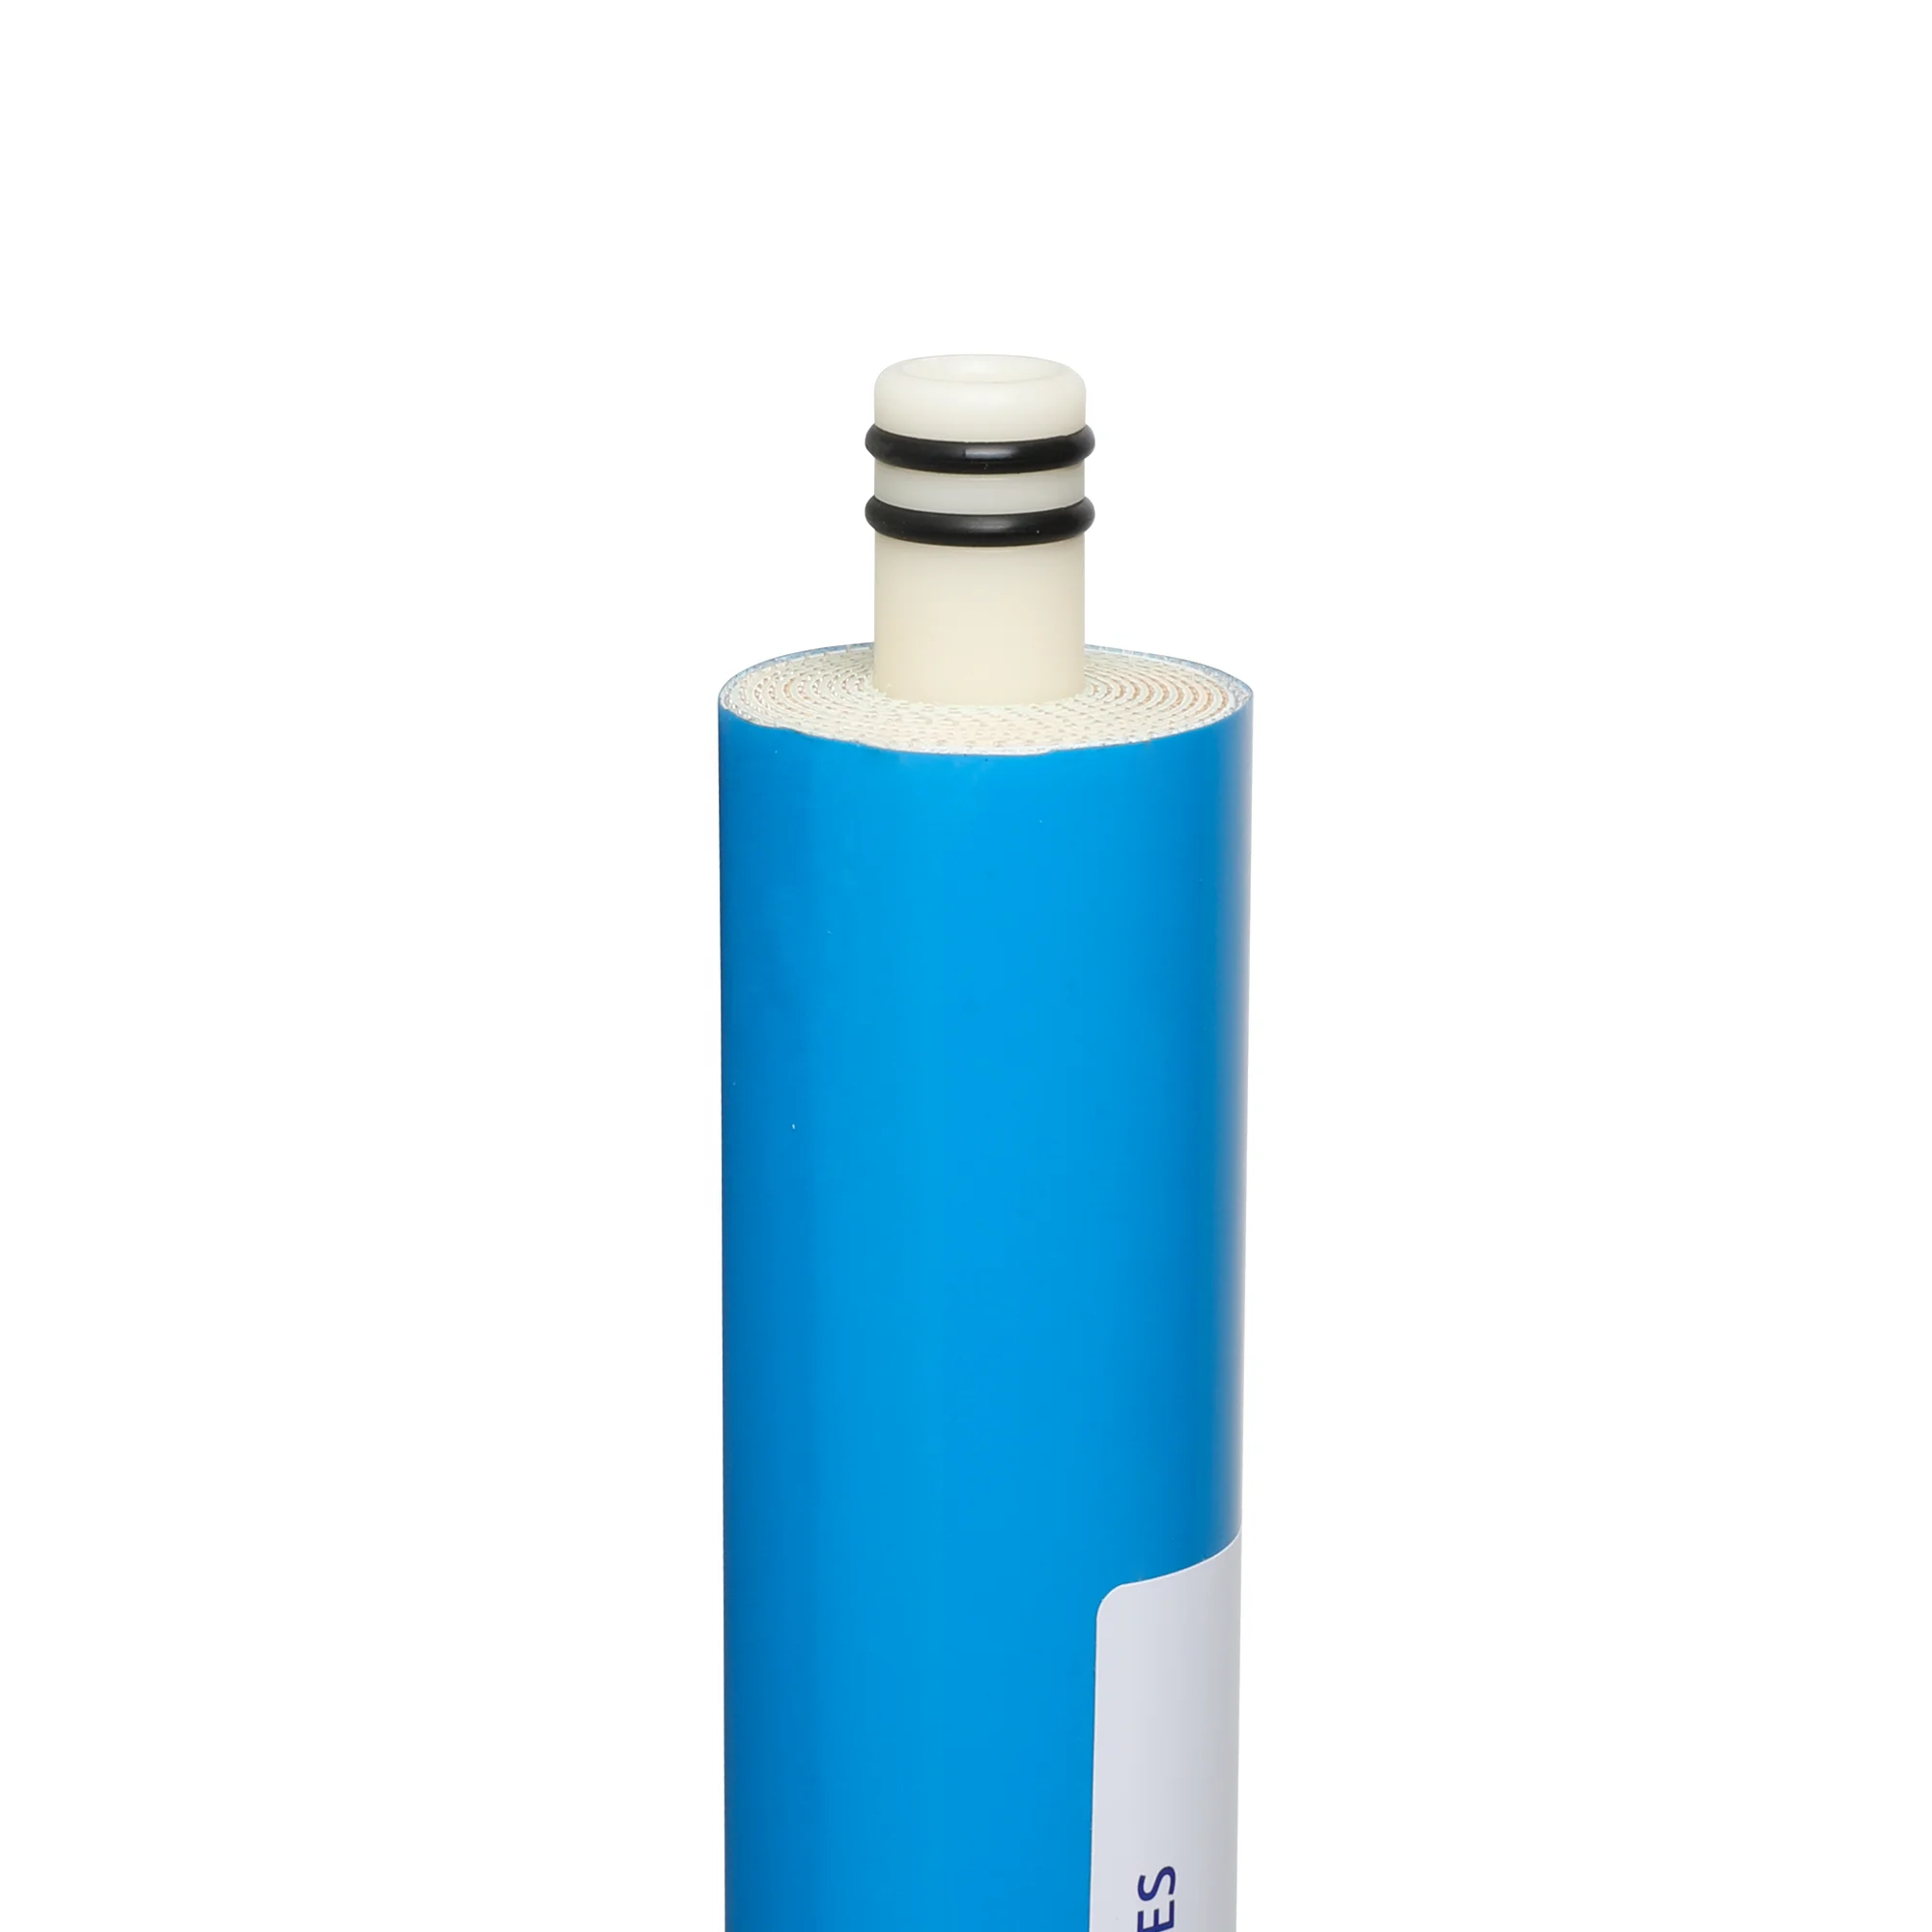 Оптовый запас Filterpur 50 gpd обратноосмотическая мембрана ro для домашнего использования